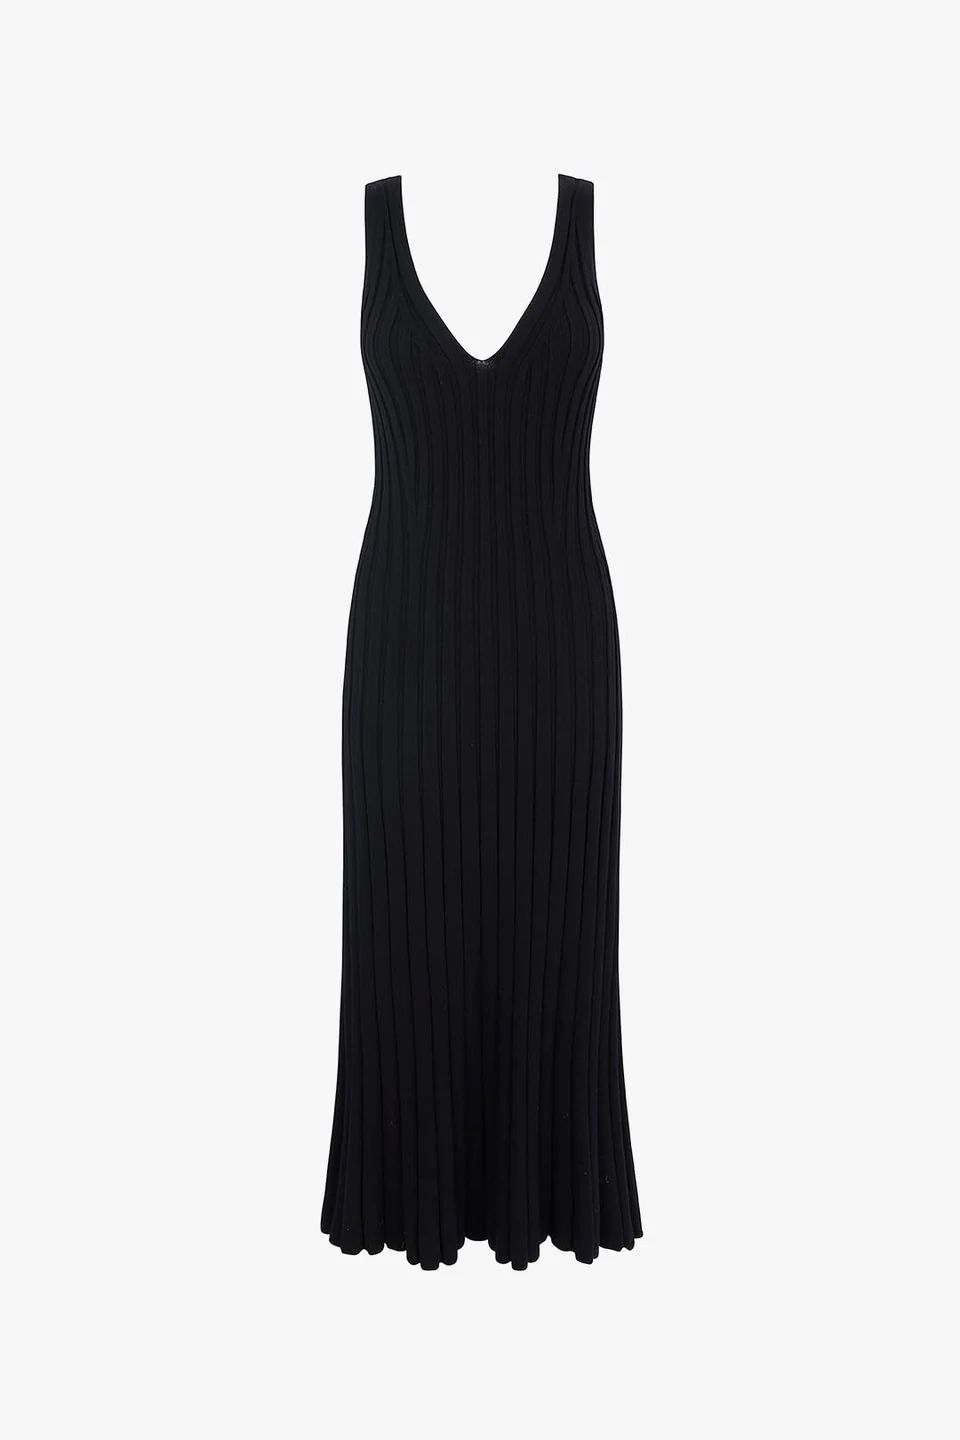 Mermaid | Knitted Dress in Black | ALIGNE | Aligne UK